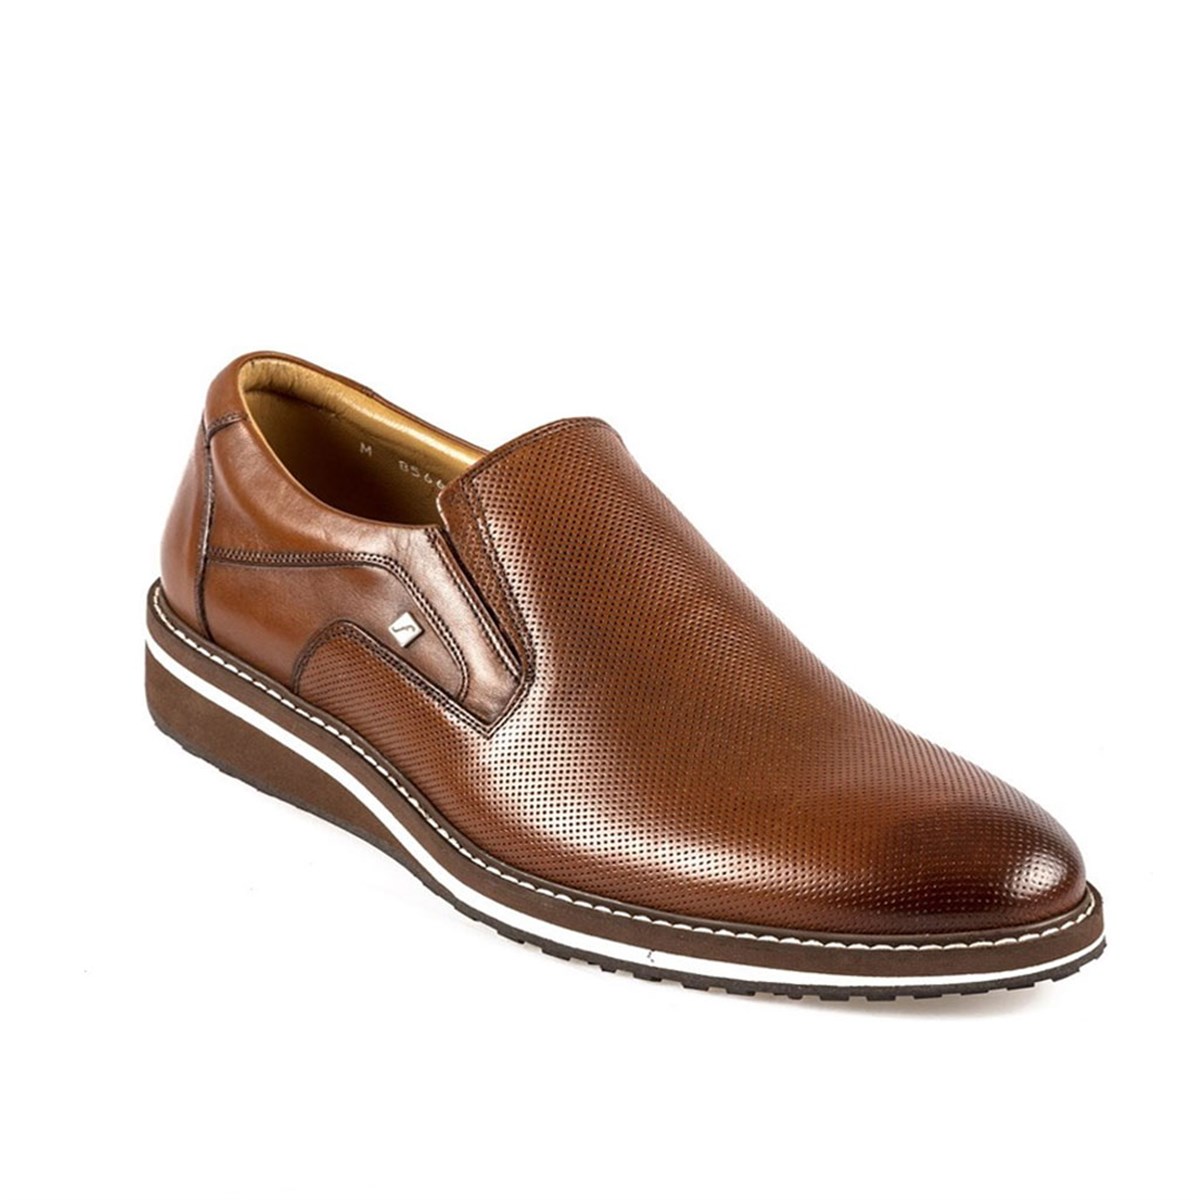 Erkek Bağcıksız Taba Hakiki Deri Günlük Hafif Tabanlı Ayakkabı , Renk: Taba, Beden: 39